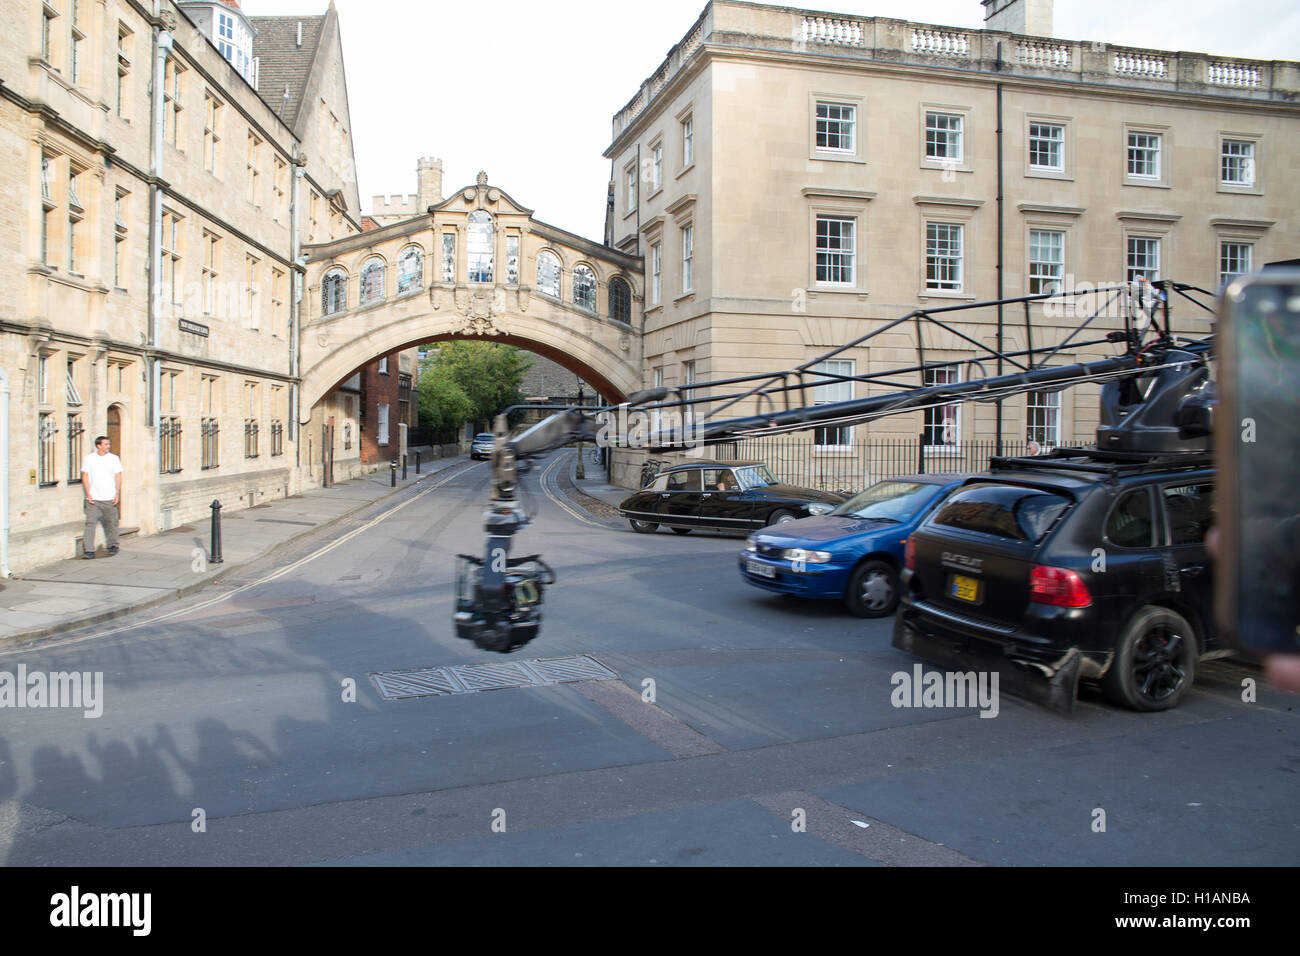 Oxford, Reino Unido. El 23 de septiembre de 2016. 5 transformador de tripulación y fundidas en rodaje en Oxford. Crédito: Pete Lusabia/Alamy Live News Foto de stock